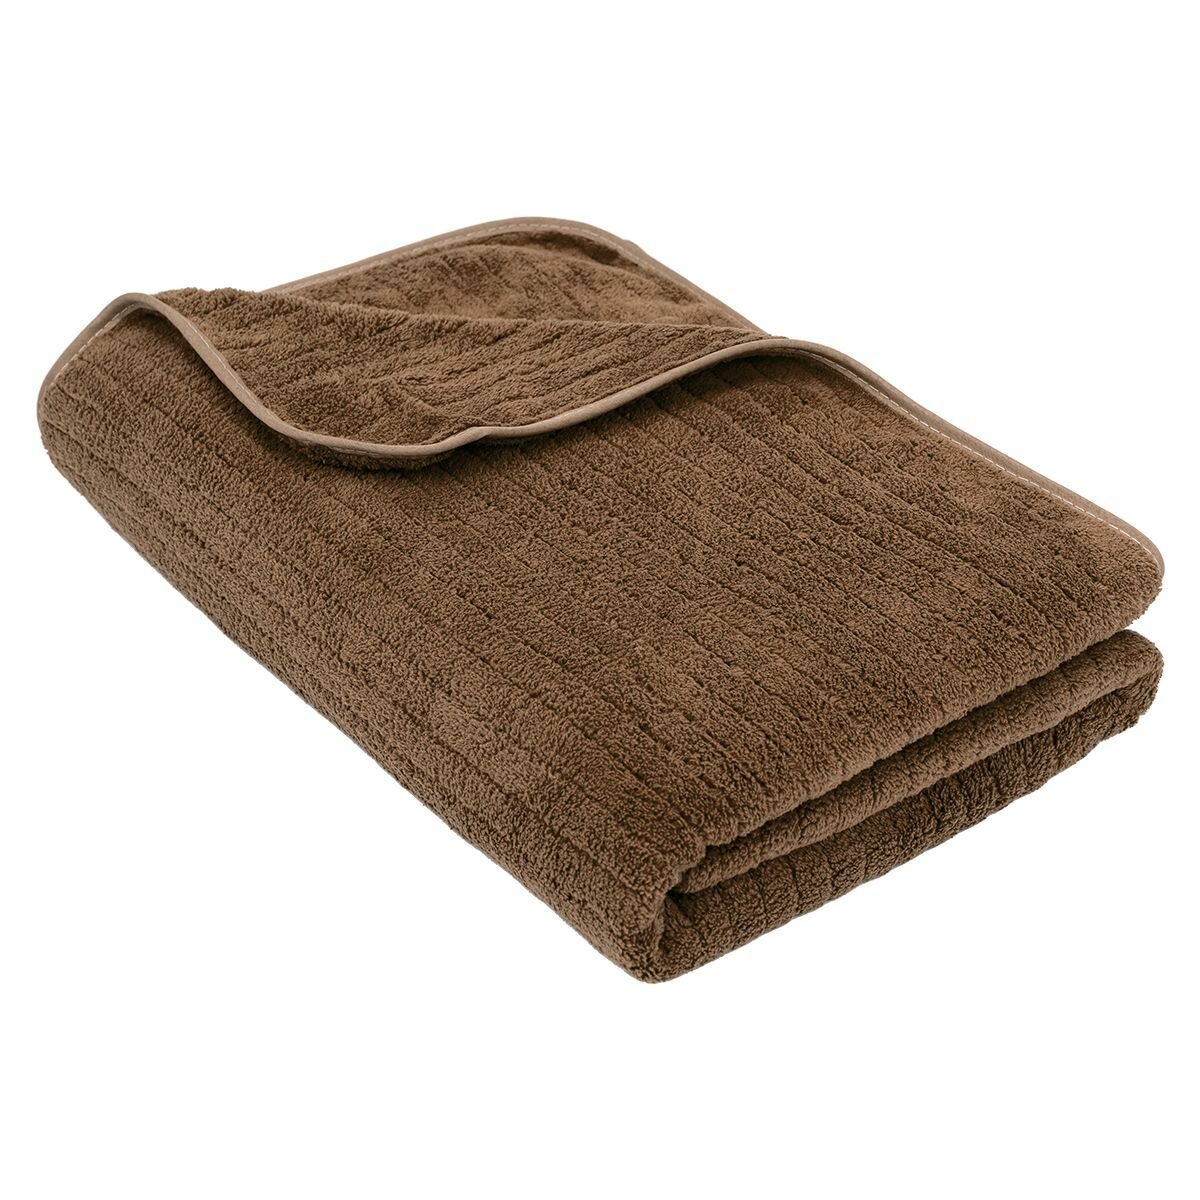 Банное полотенце Каскад L 70*140 микрофибра, коричневый, для ванной, бани, спорта, легкое, быстросохнущее